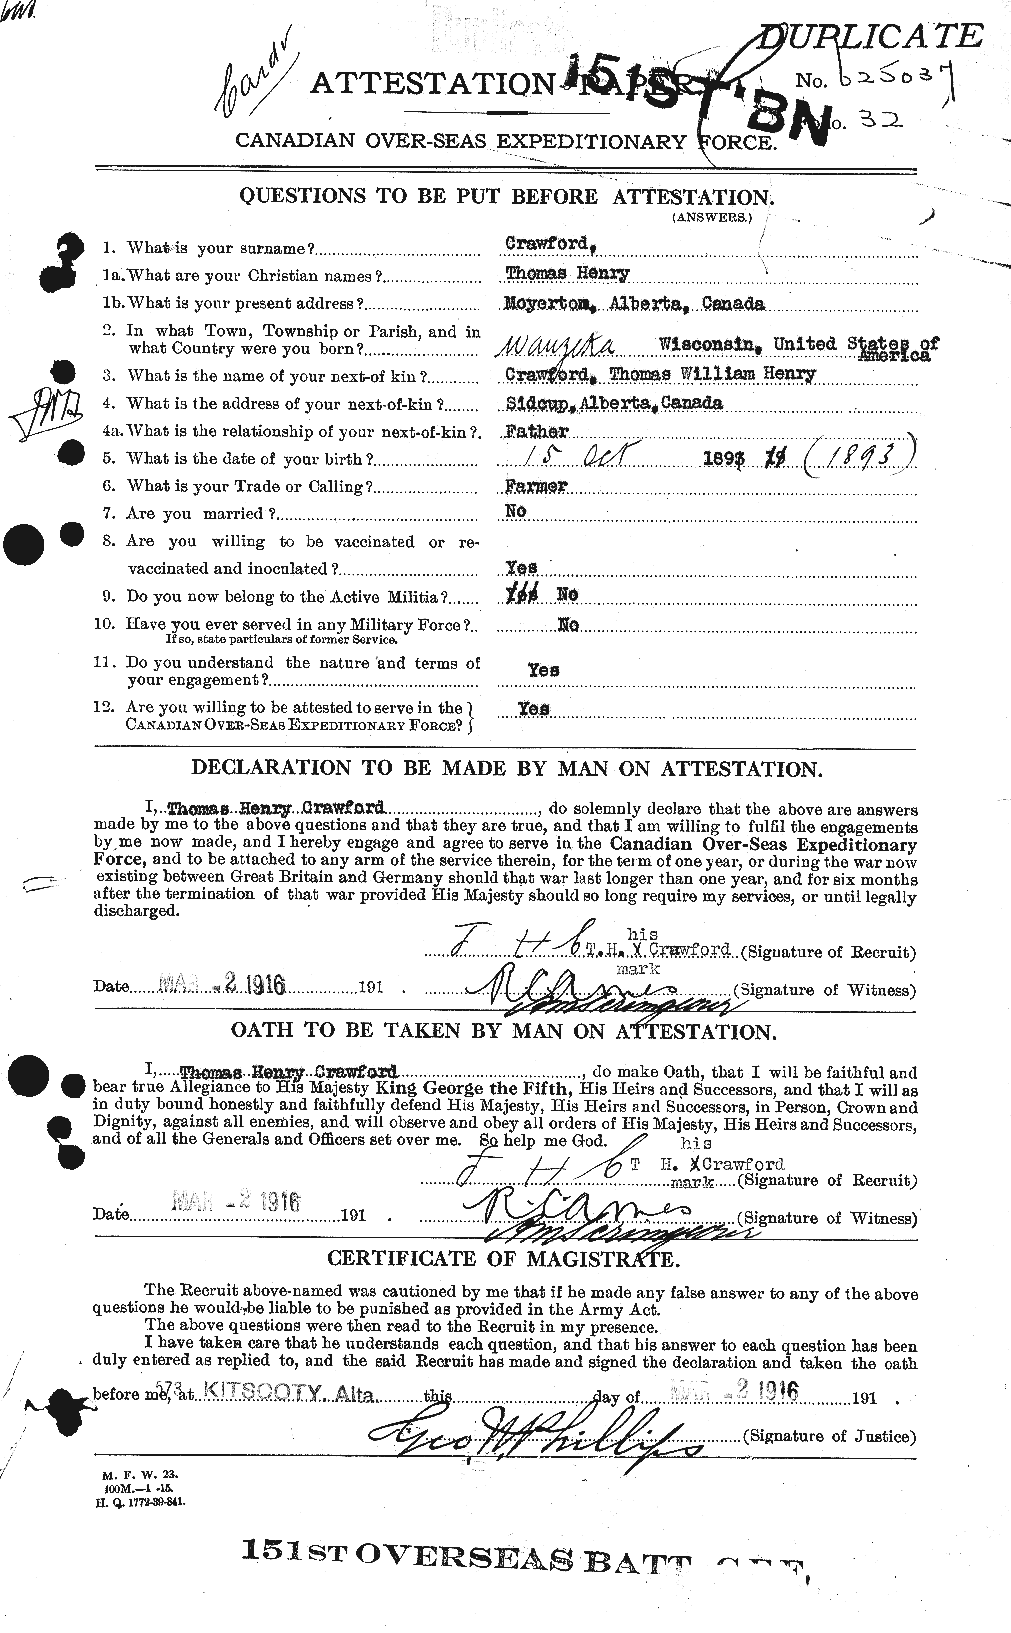 Dossiers du Personnel de la Première Guerre mondiale - CEC 061352a